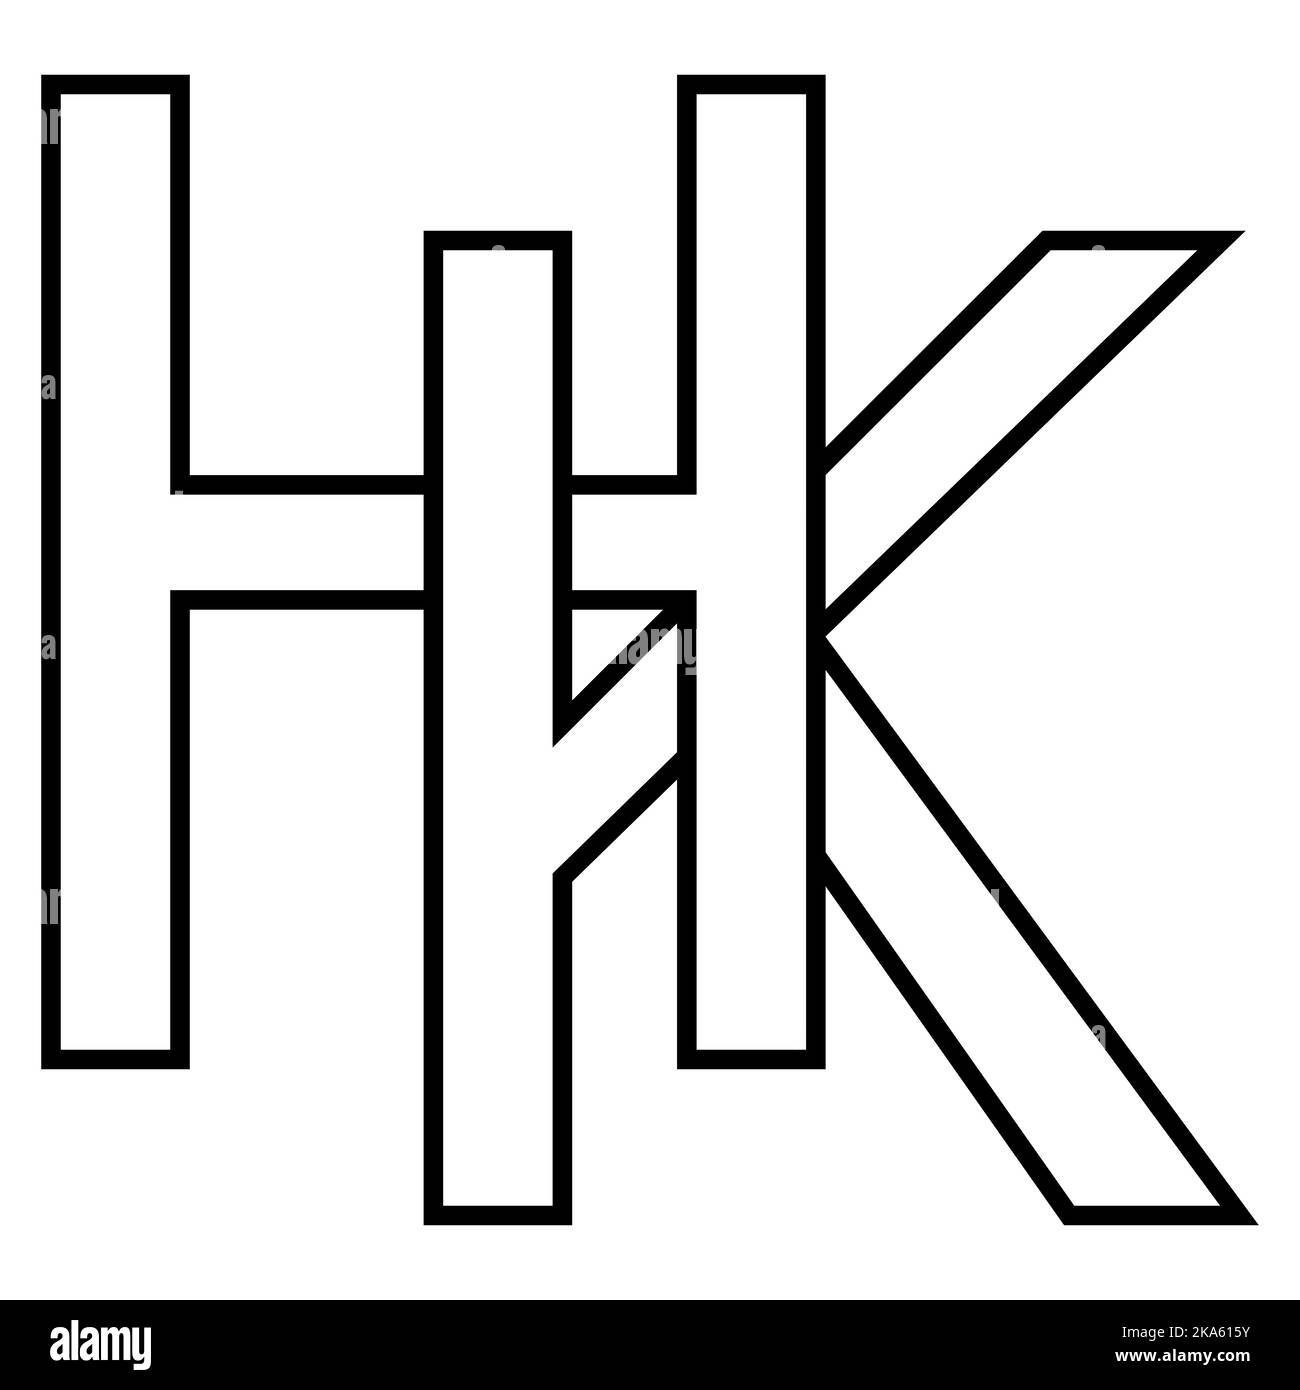 Logo Zeichen hk kh Symbol nft, Zeilensprungbuchstaben k h Stock Vektor